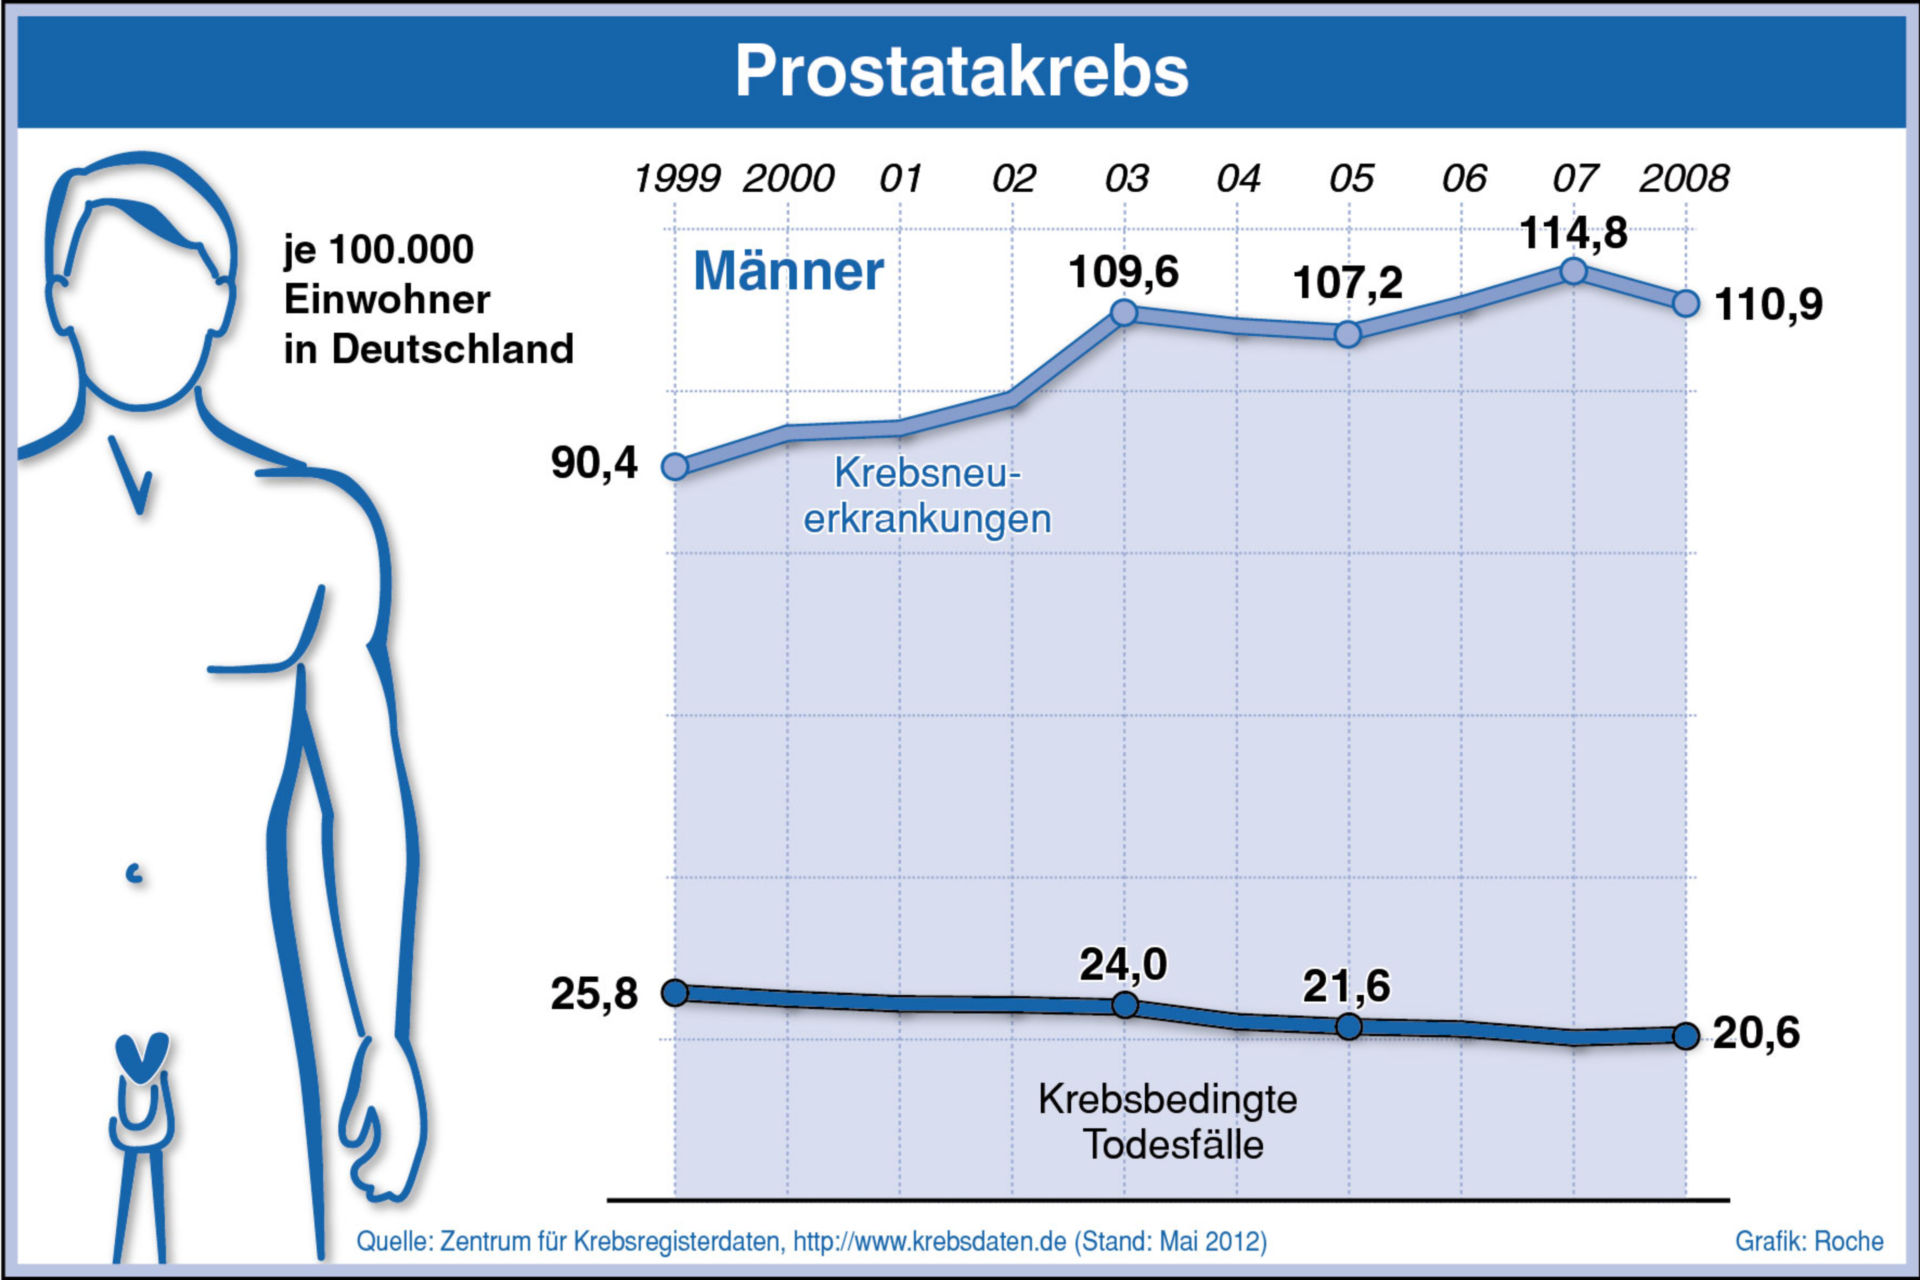 Inzidenz/Mortalität Prostatakrebs